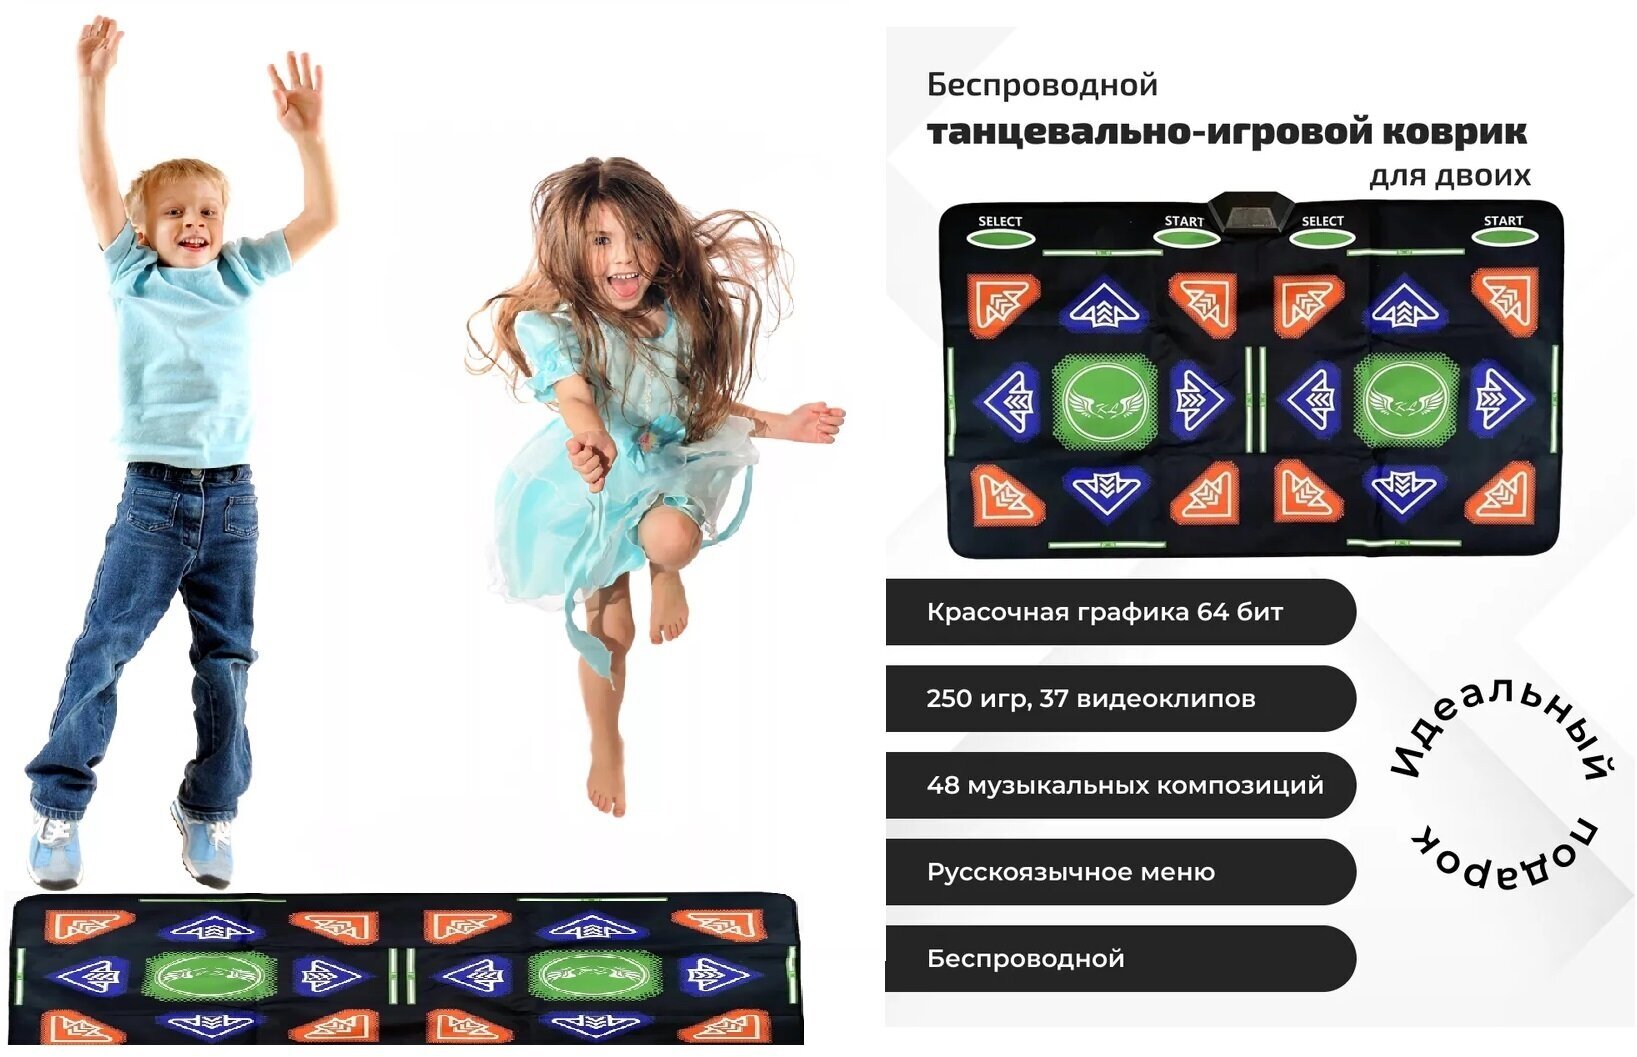 Танцевально-игровой коврик для двоих на русском языке с геймпадами беспроводной + аэробика